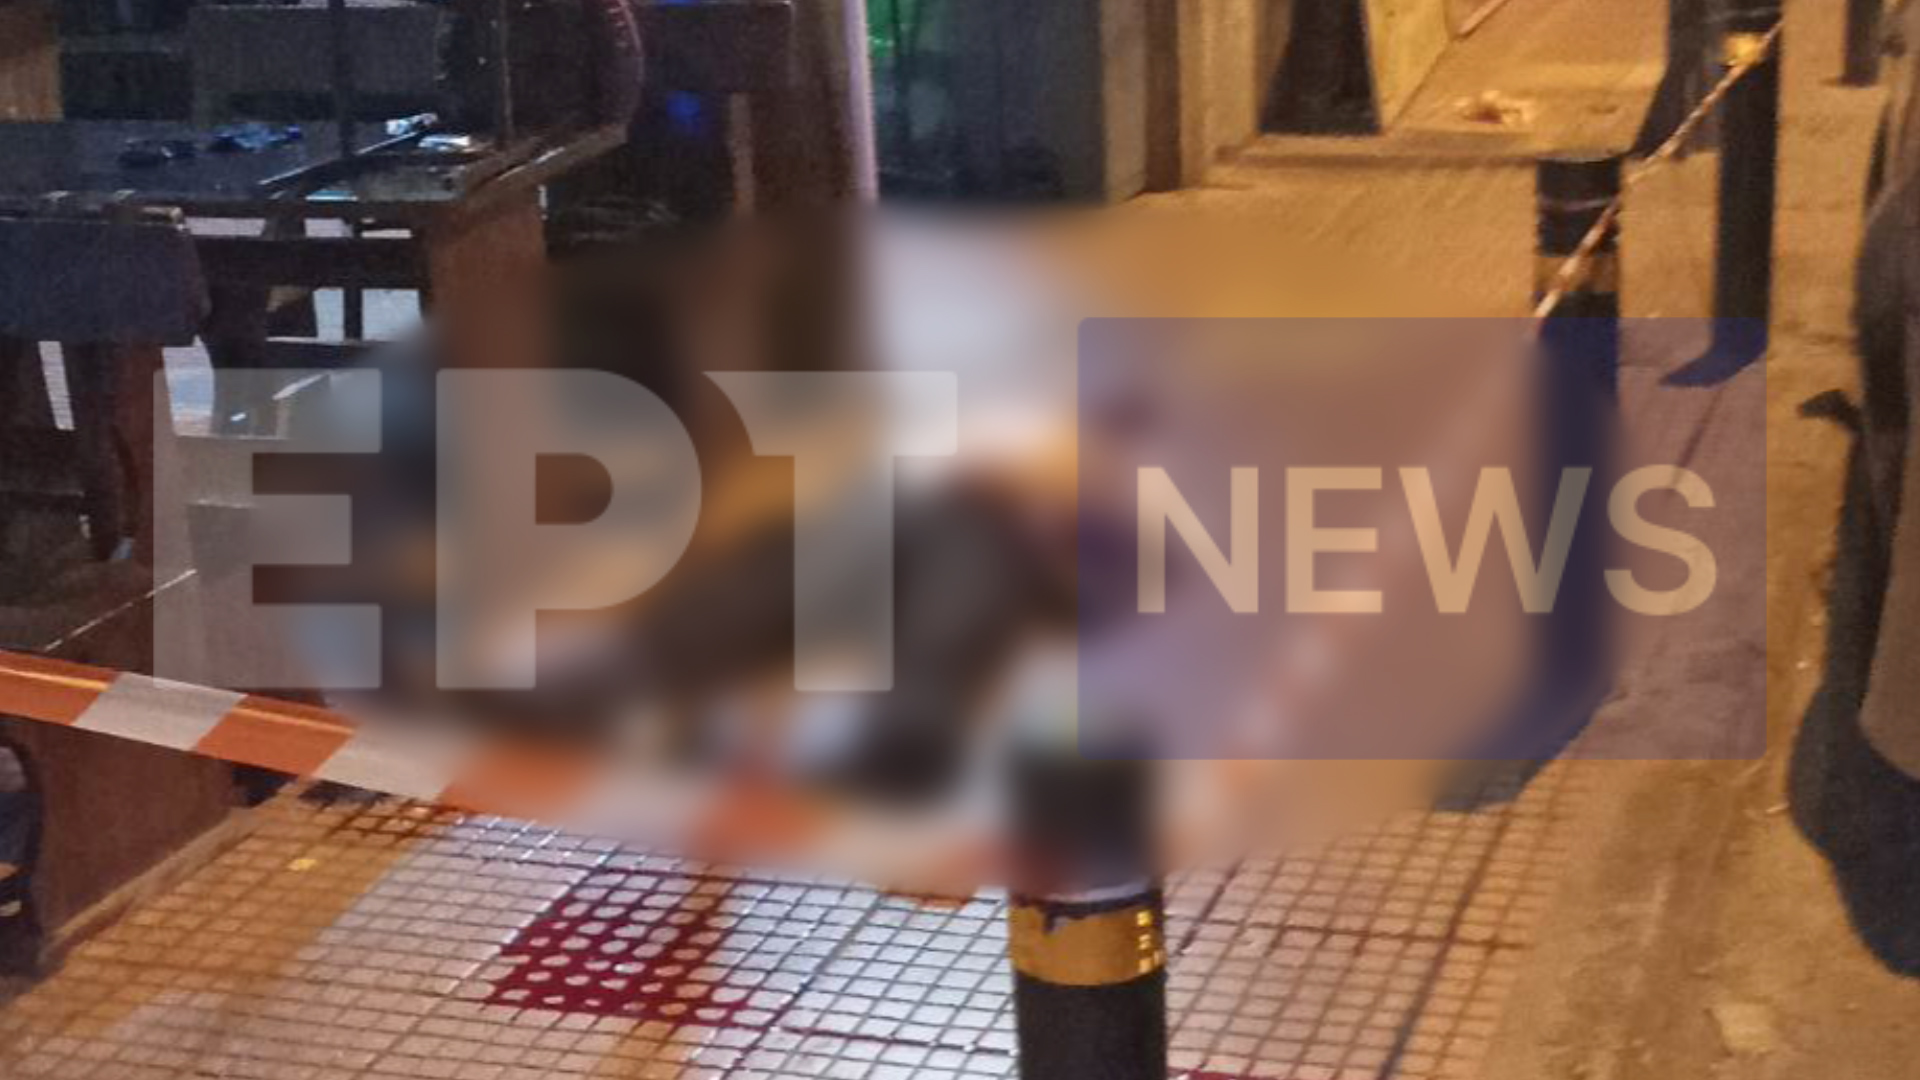 Αποκλειστικό βίντεο ΕΡΤ: Η στιγμή της δολοφονίας στην Πλατεία Βάθης